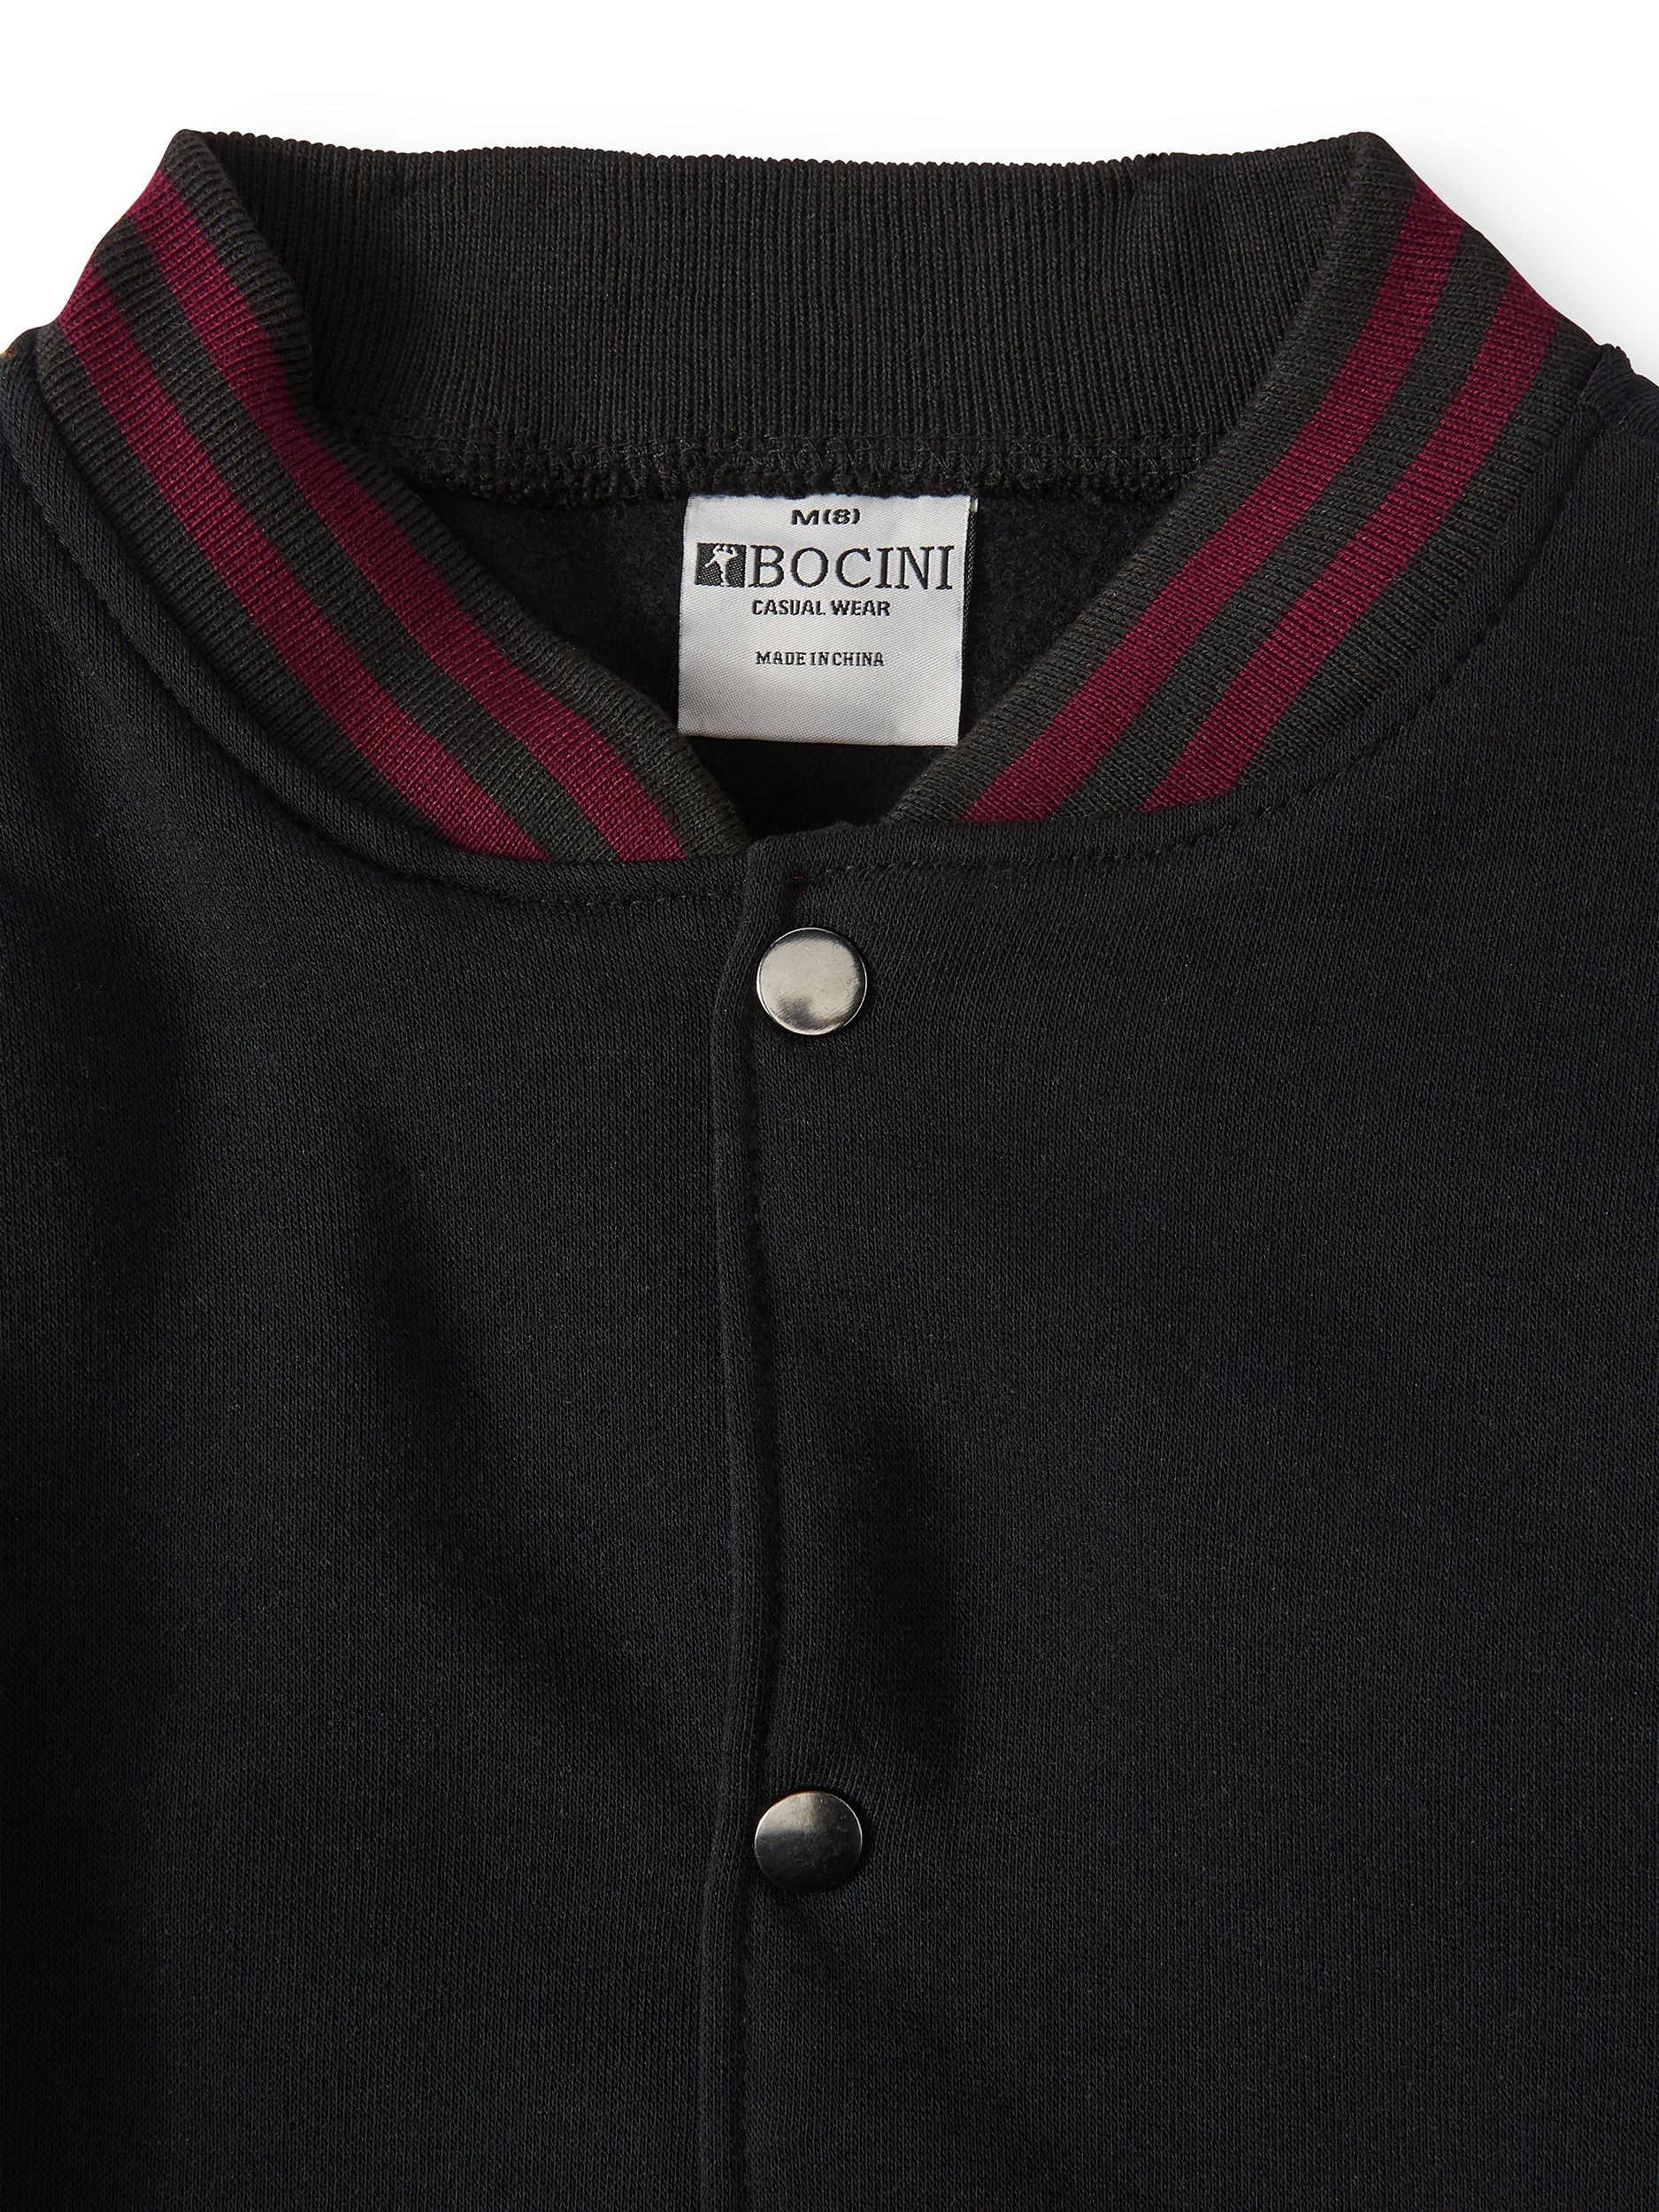 Bocini Boys Unlined Fleece Varsity Jackets, Sizes 6-16 - image 3 of 3